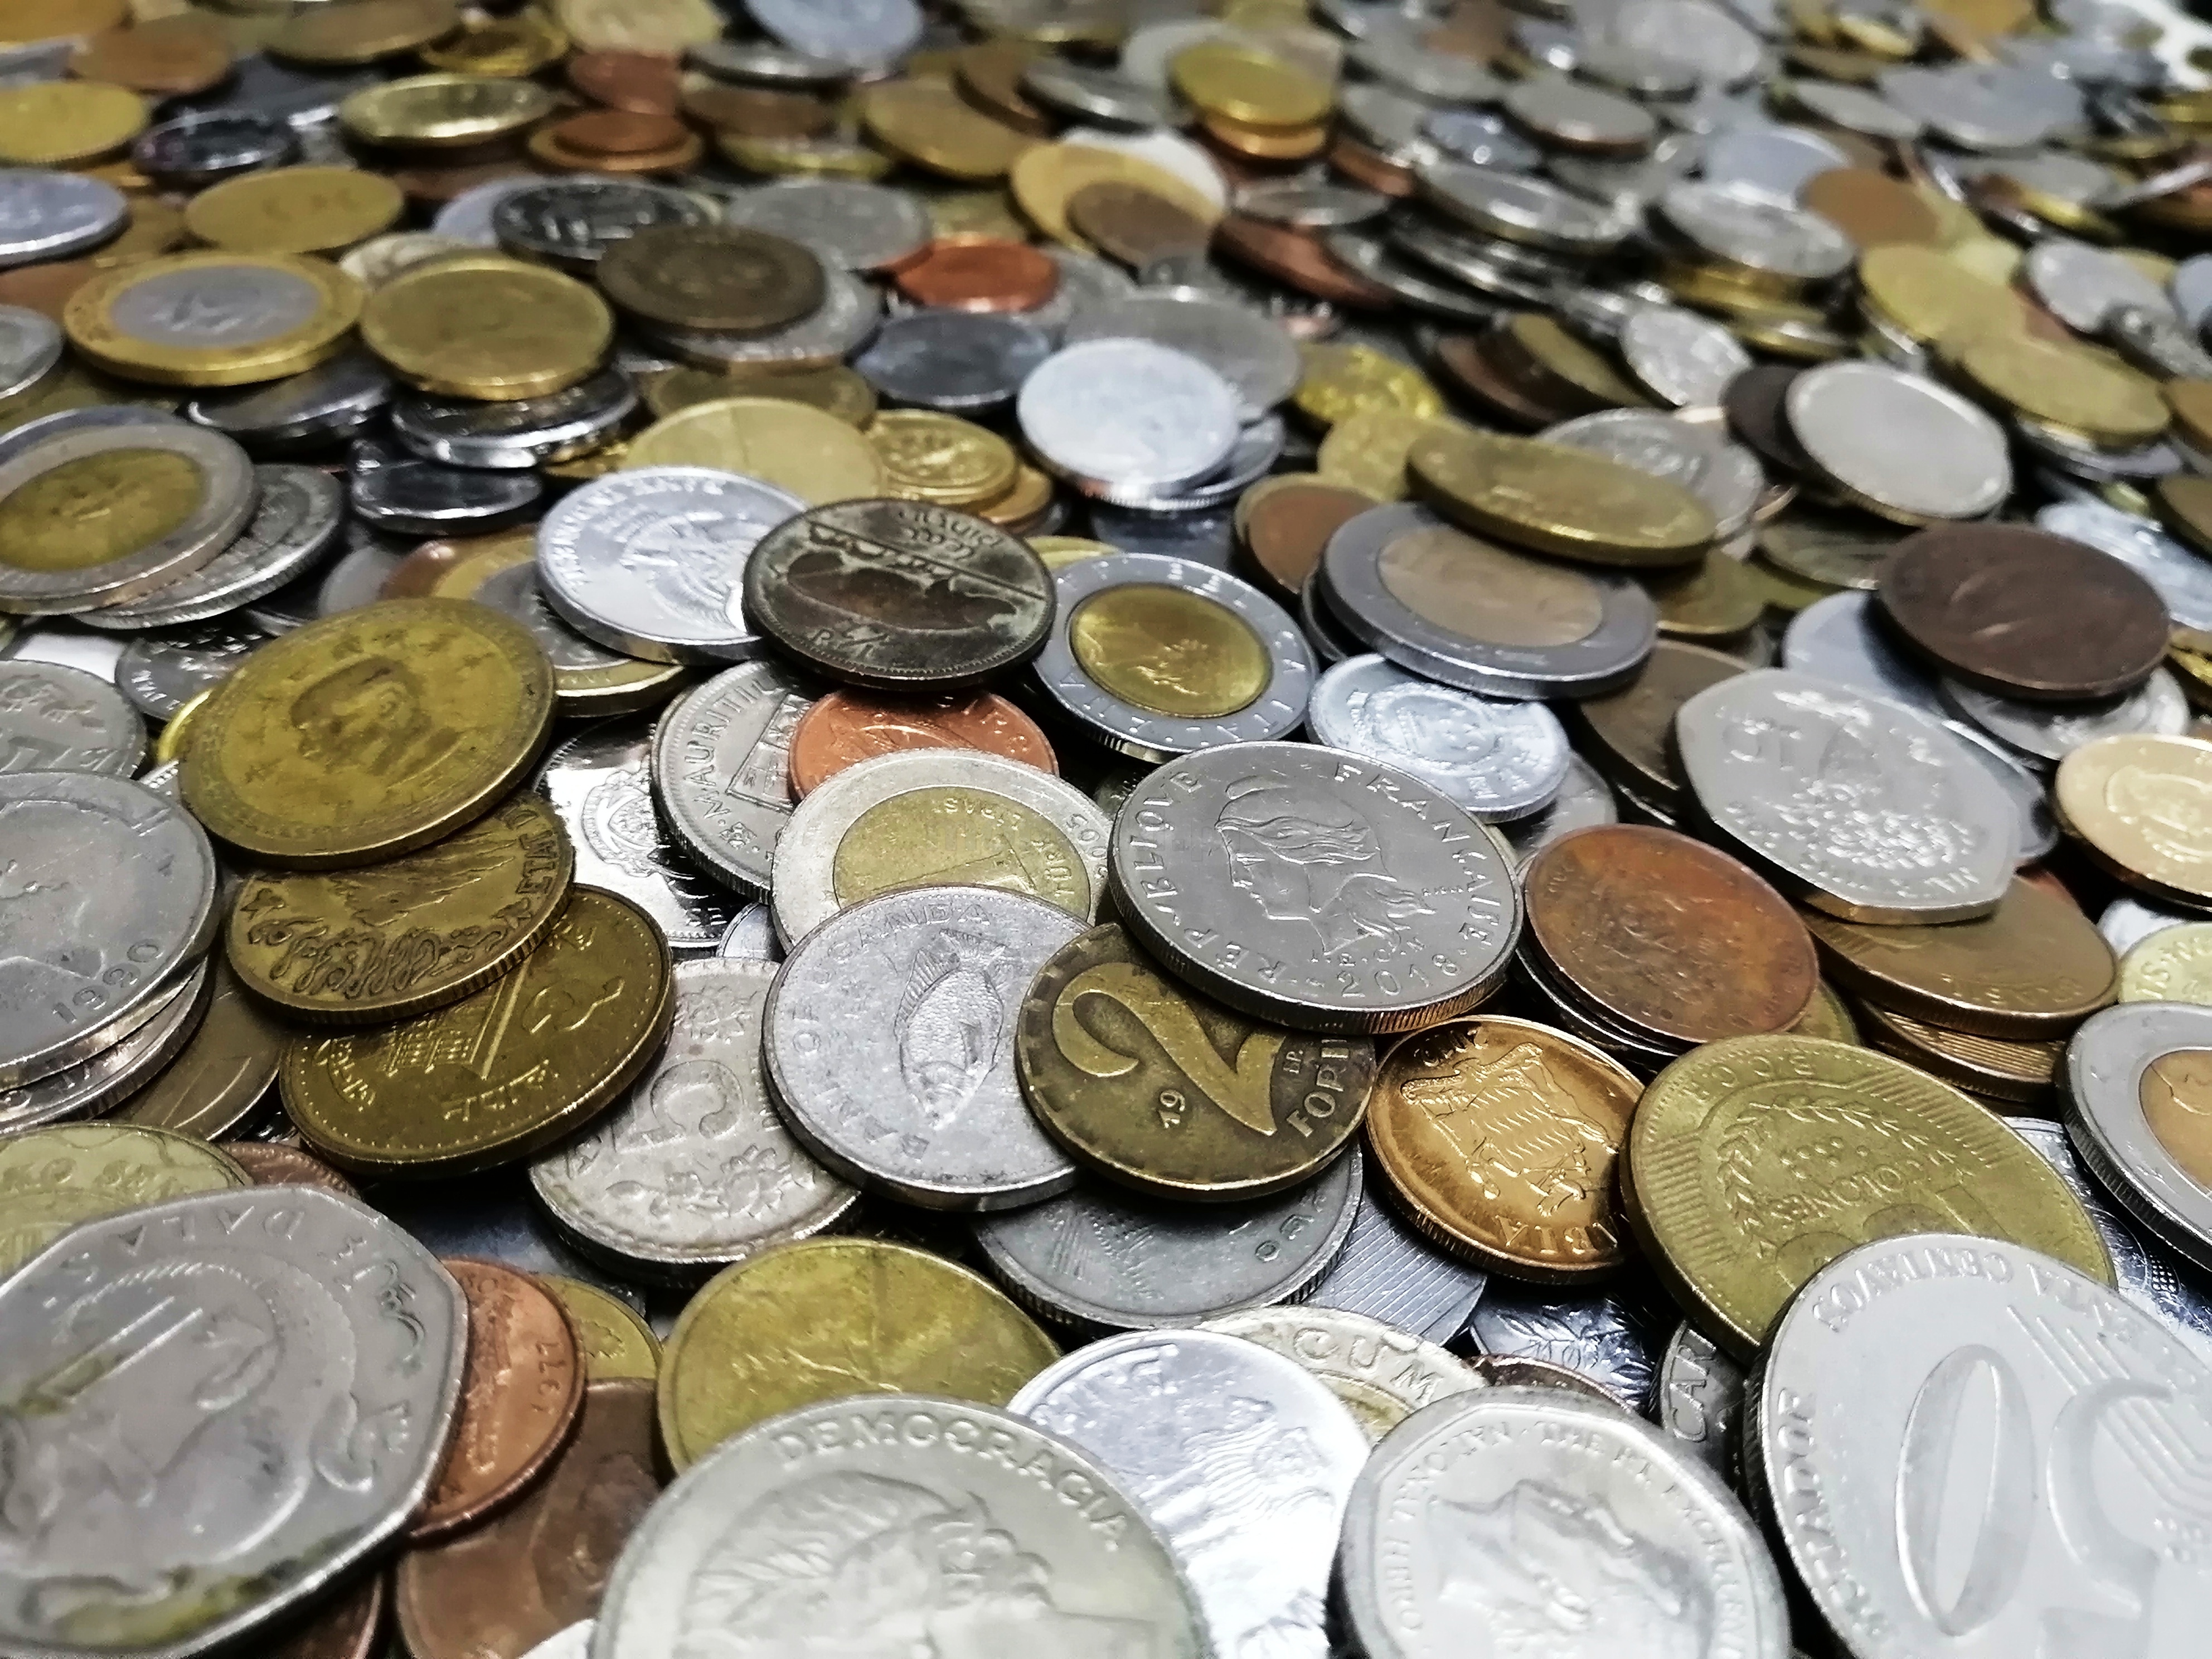 Миксы монет на вес по 1 кг. Содержание экзотики 50%., фото , изображение 7